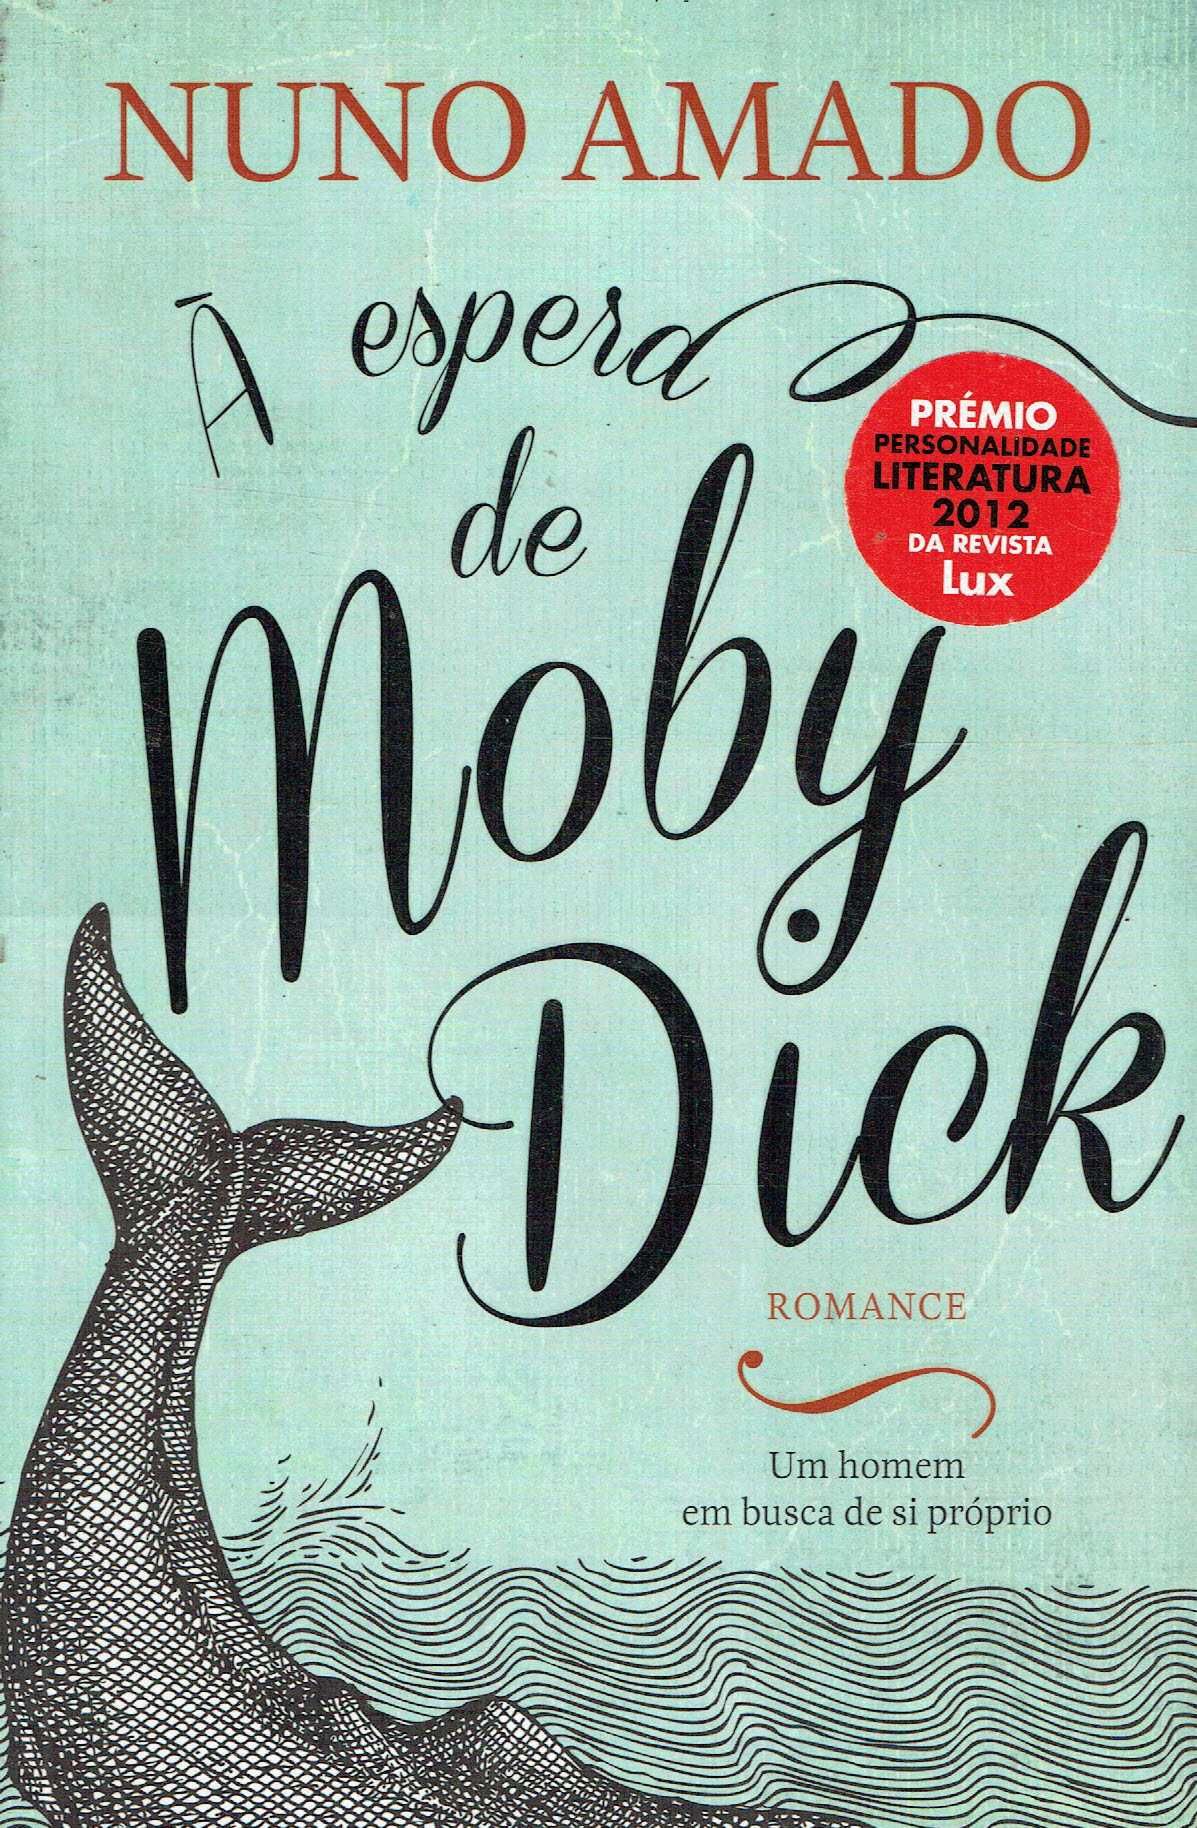 15180

À Espera de Moby Dick
de Nuno Amado